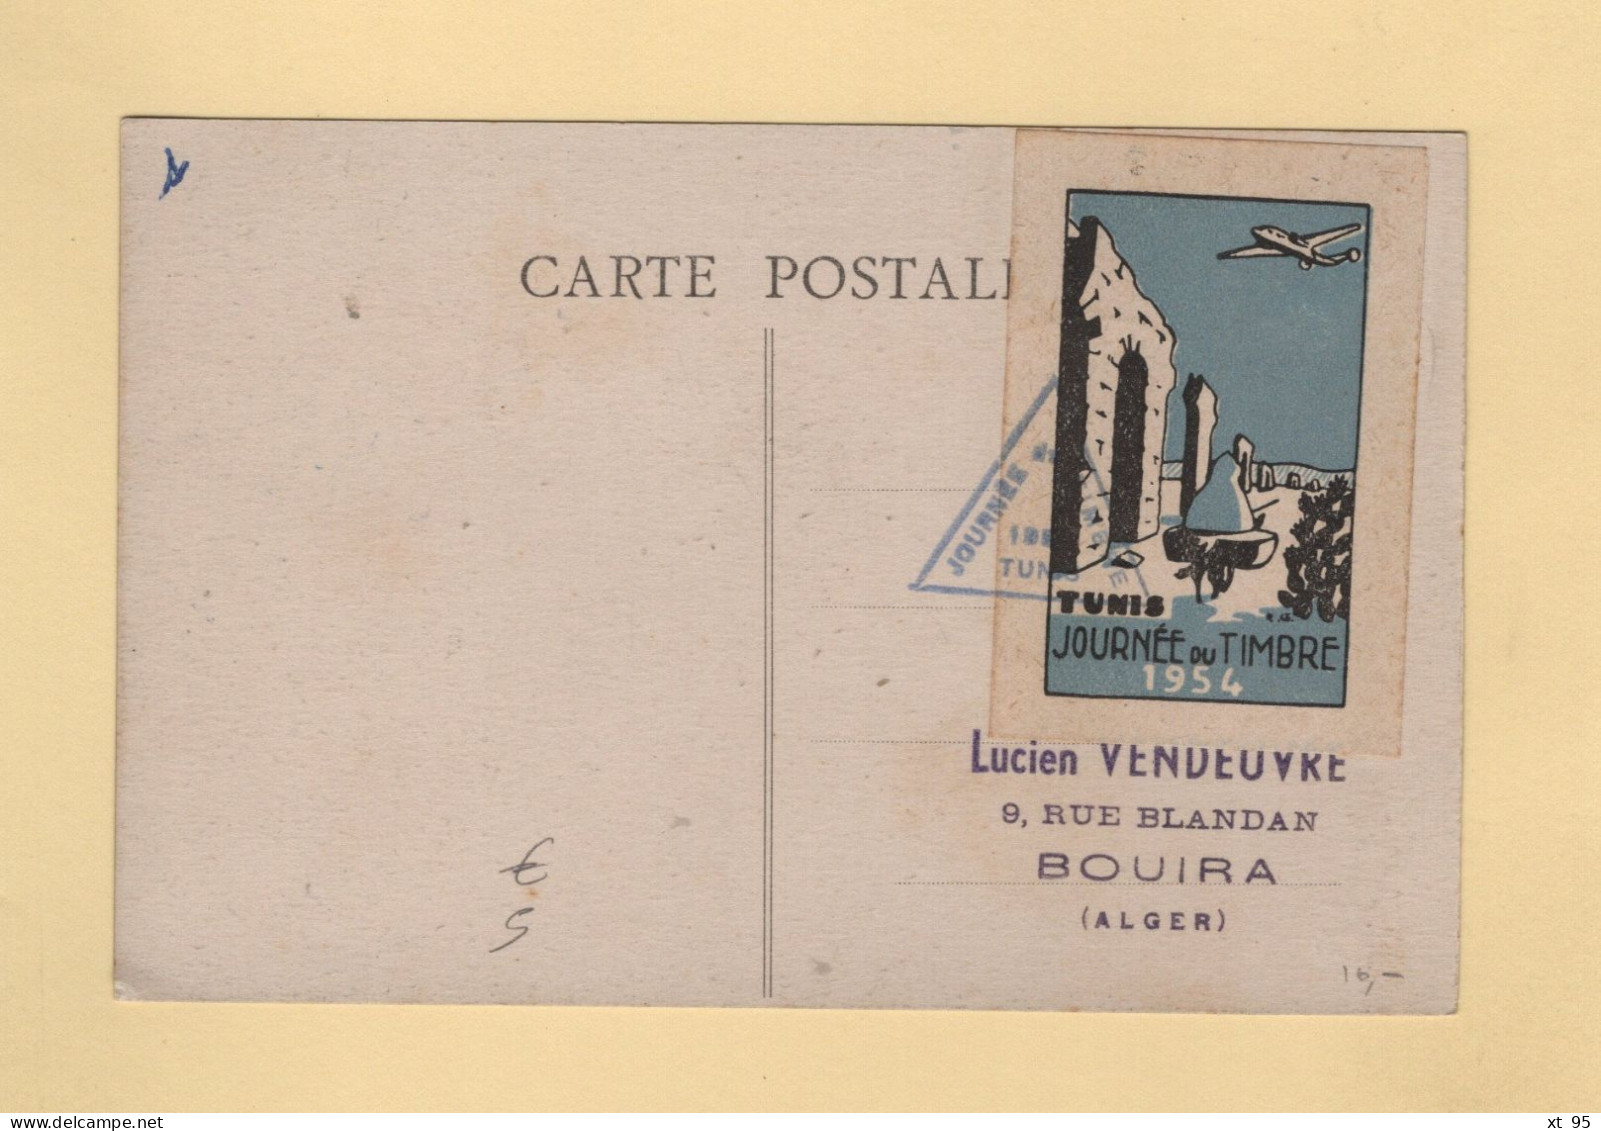 Tunisie - Journee Du Timbre - 1954 - Vignette Au Dos - Storia Postale